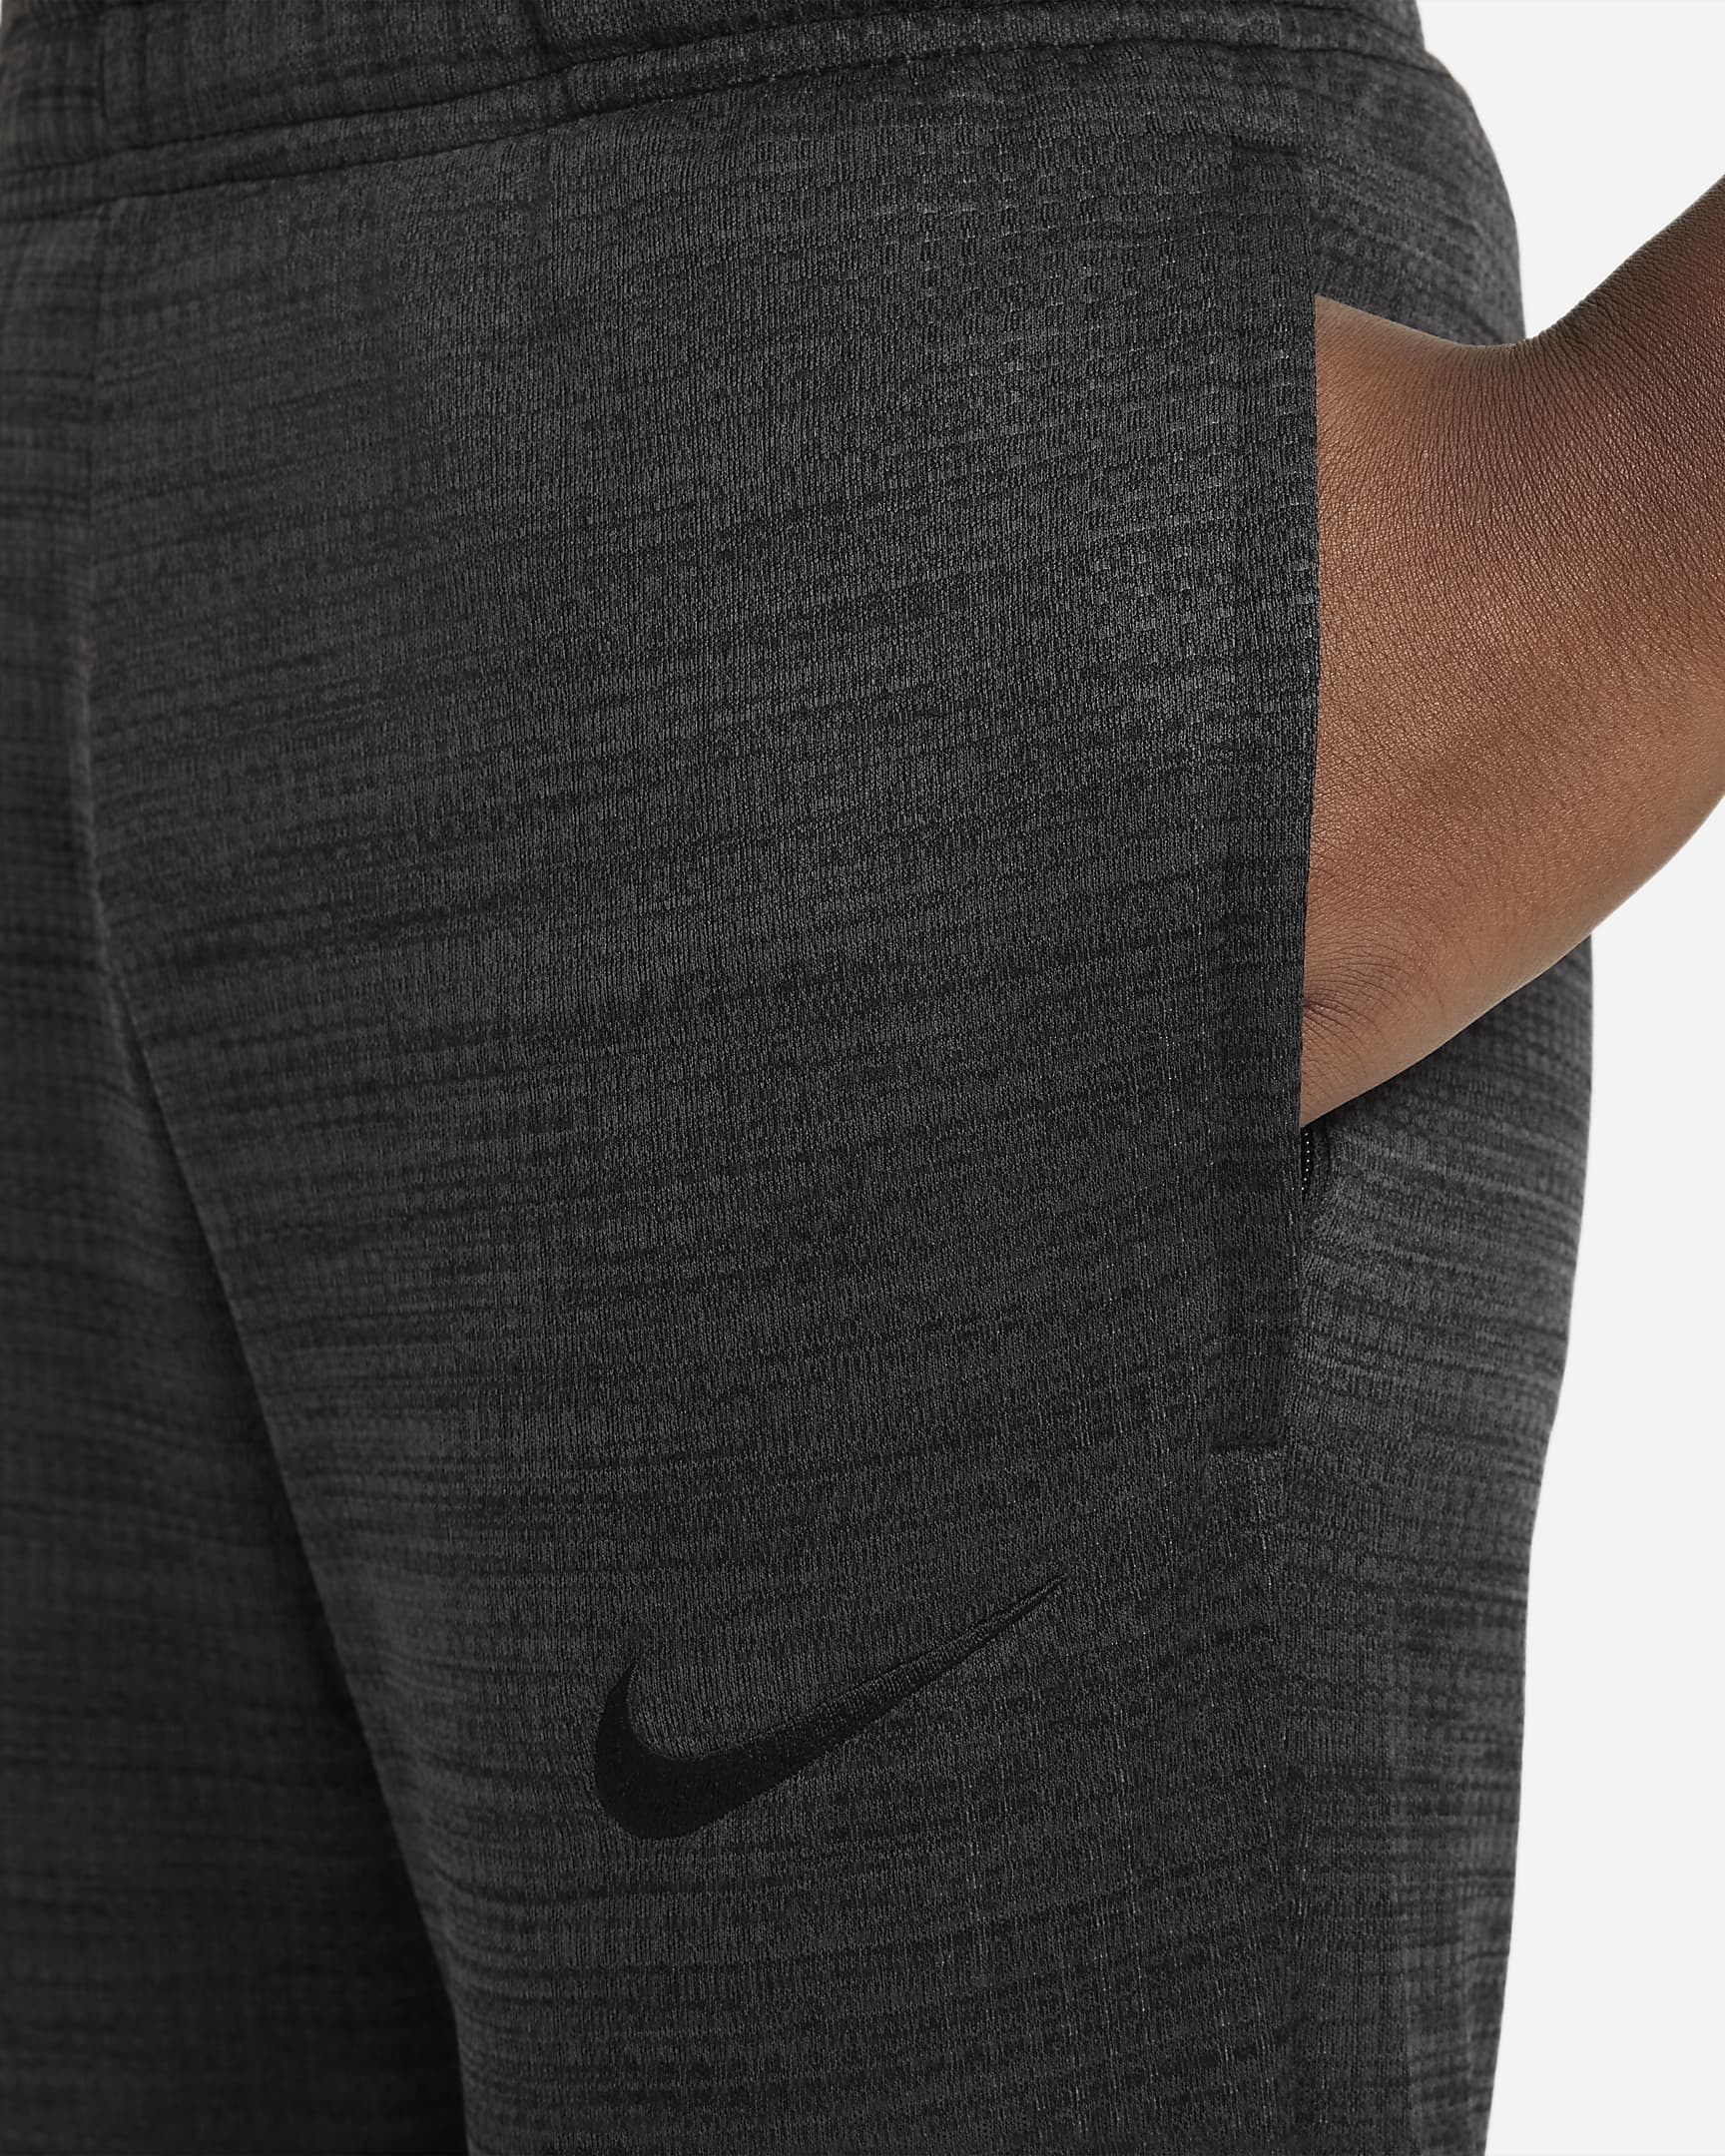 Nike Dri-FIT Academy Voetbaltrainingsbroek voor kids - Zwart/Zwart